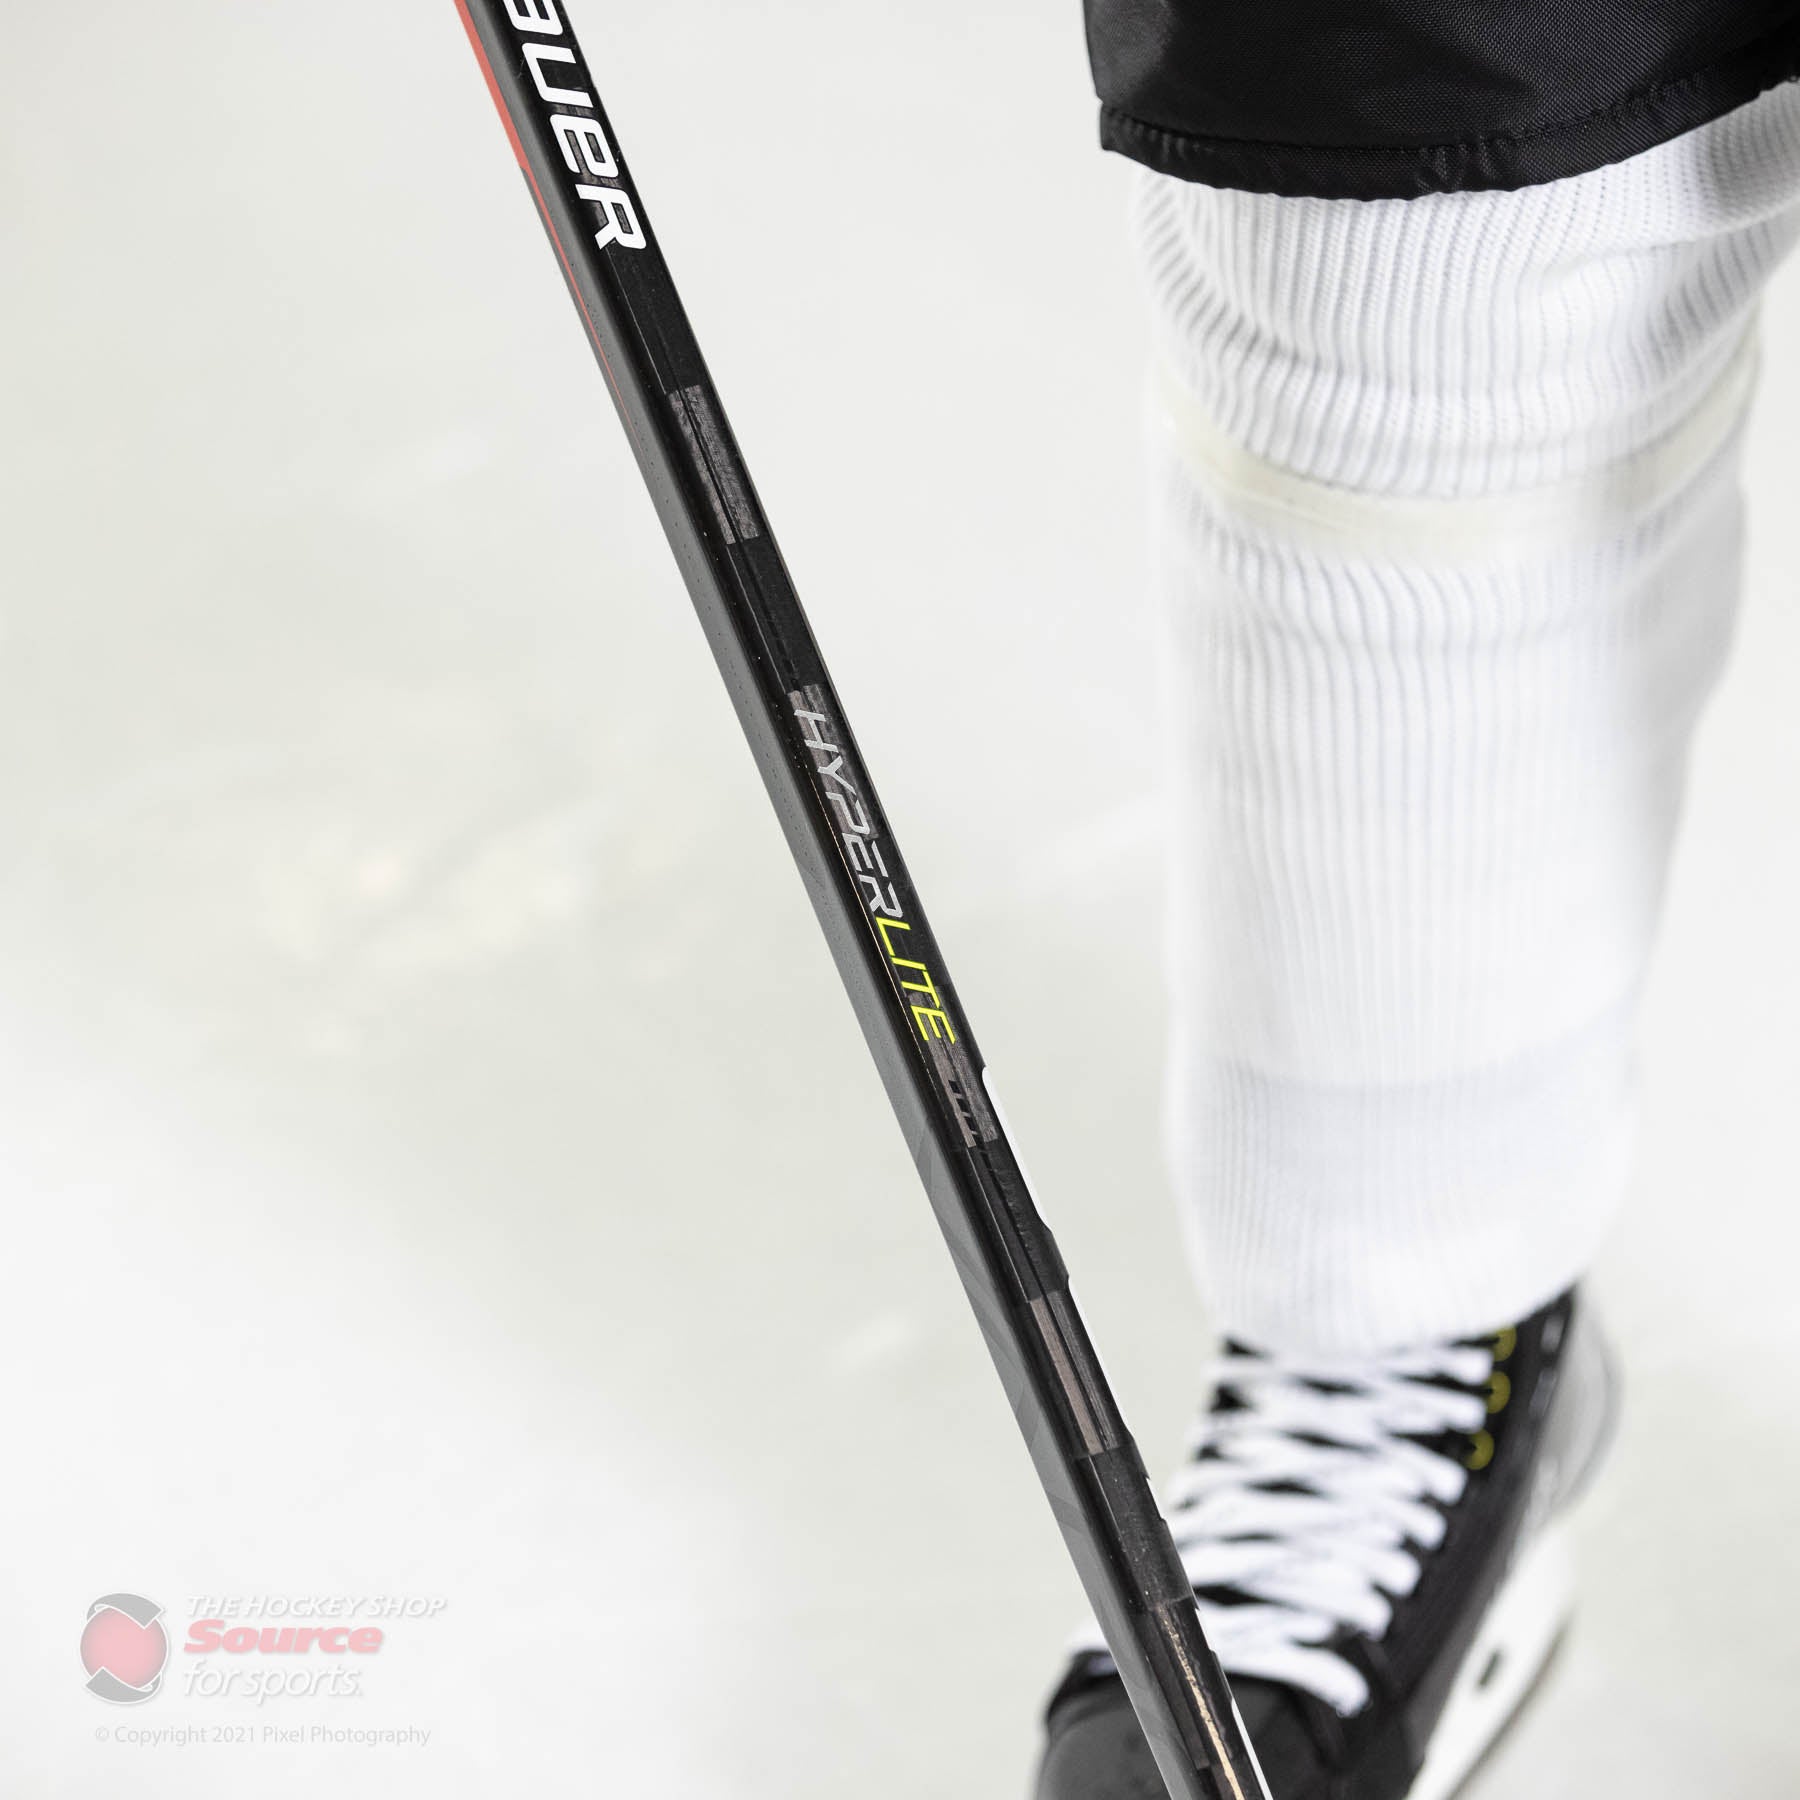 Bauer Vapor Hyperlite2 - Quick Turn Stick - Senior | Jerry's Hockey